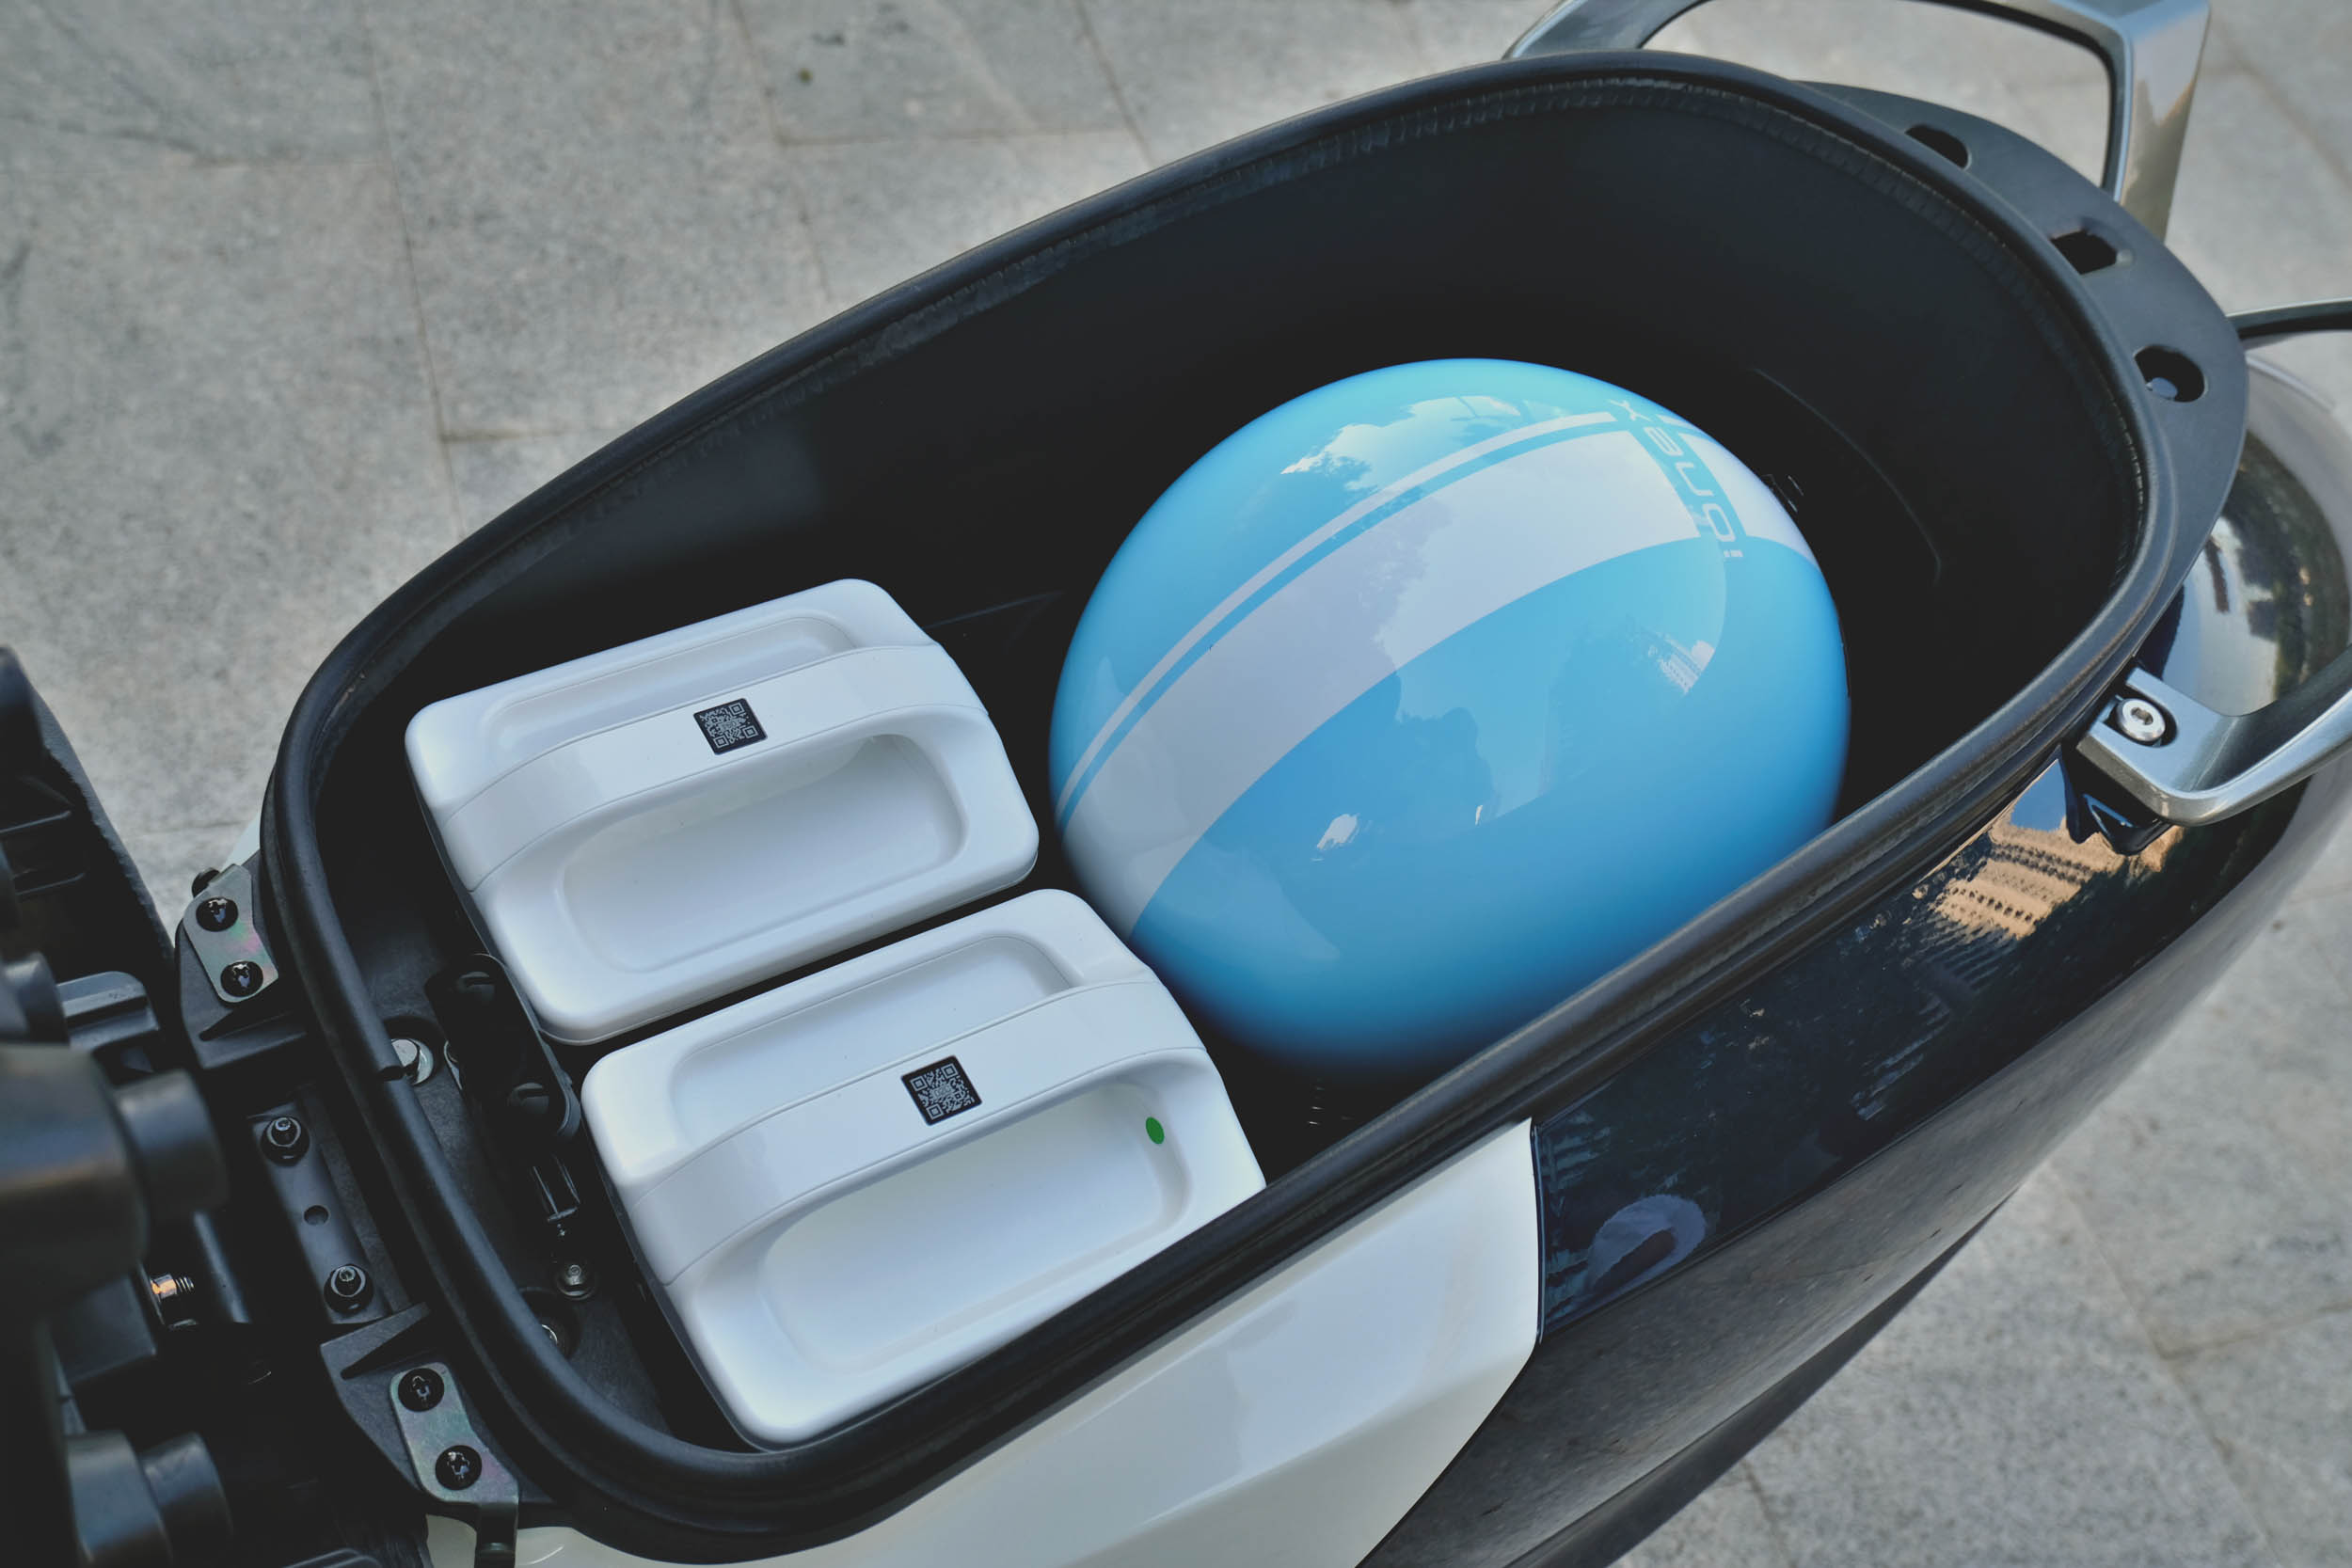 即便採用了雙電池的設定，加大的車廂空間也可以輕鬆放入 3/4 的安全帽。